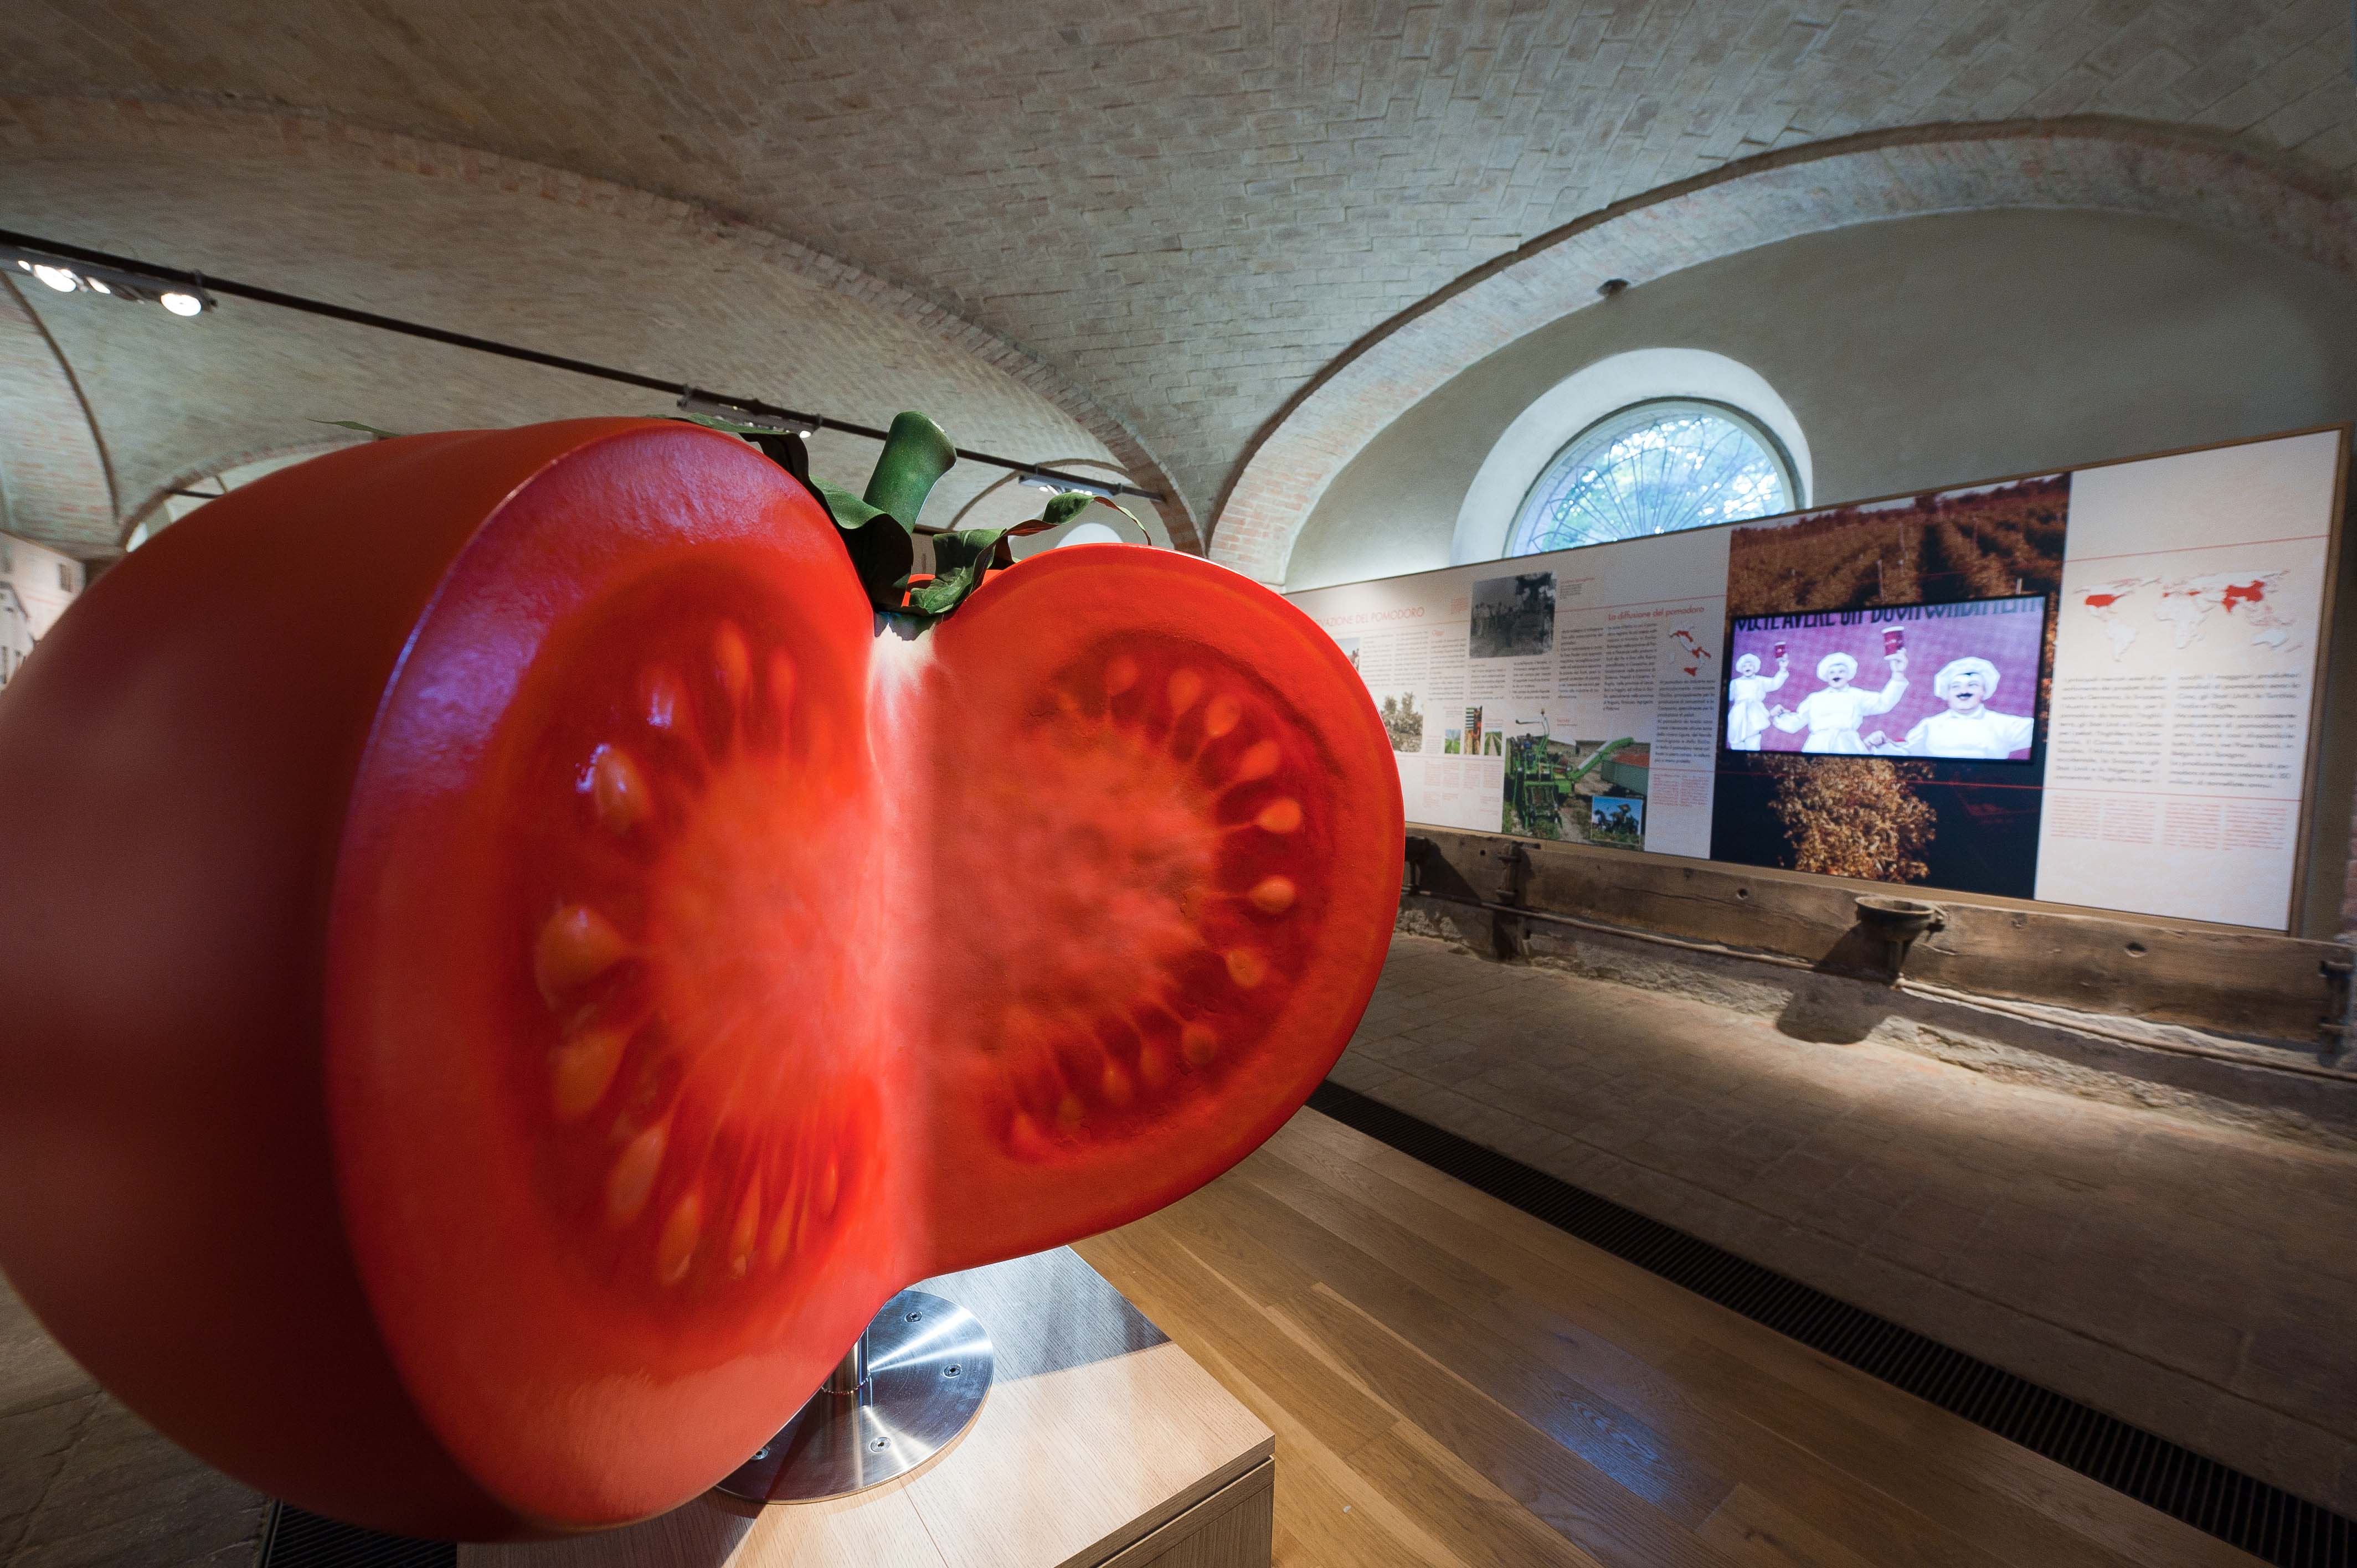 Tomato Museum in Collecchio (PR) interior n. 1 Picture by L. Rossi)